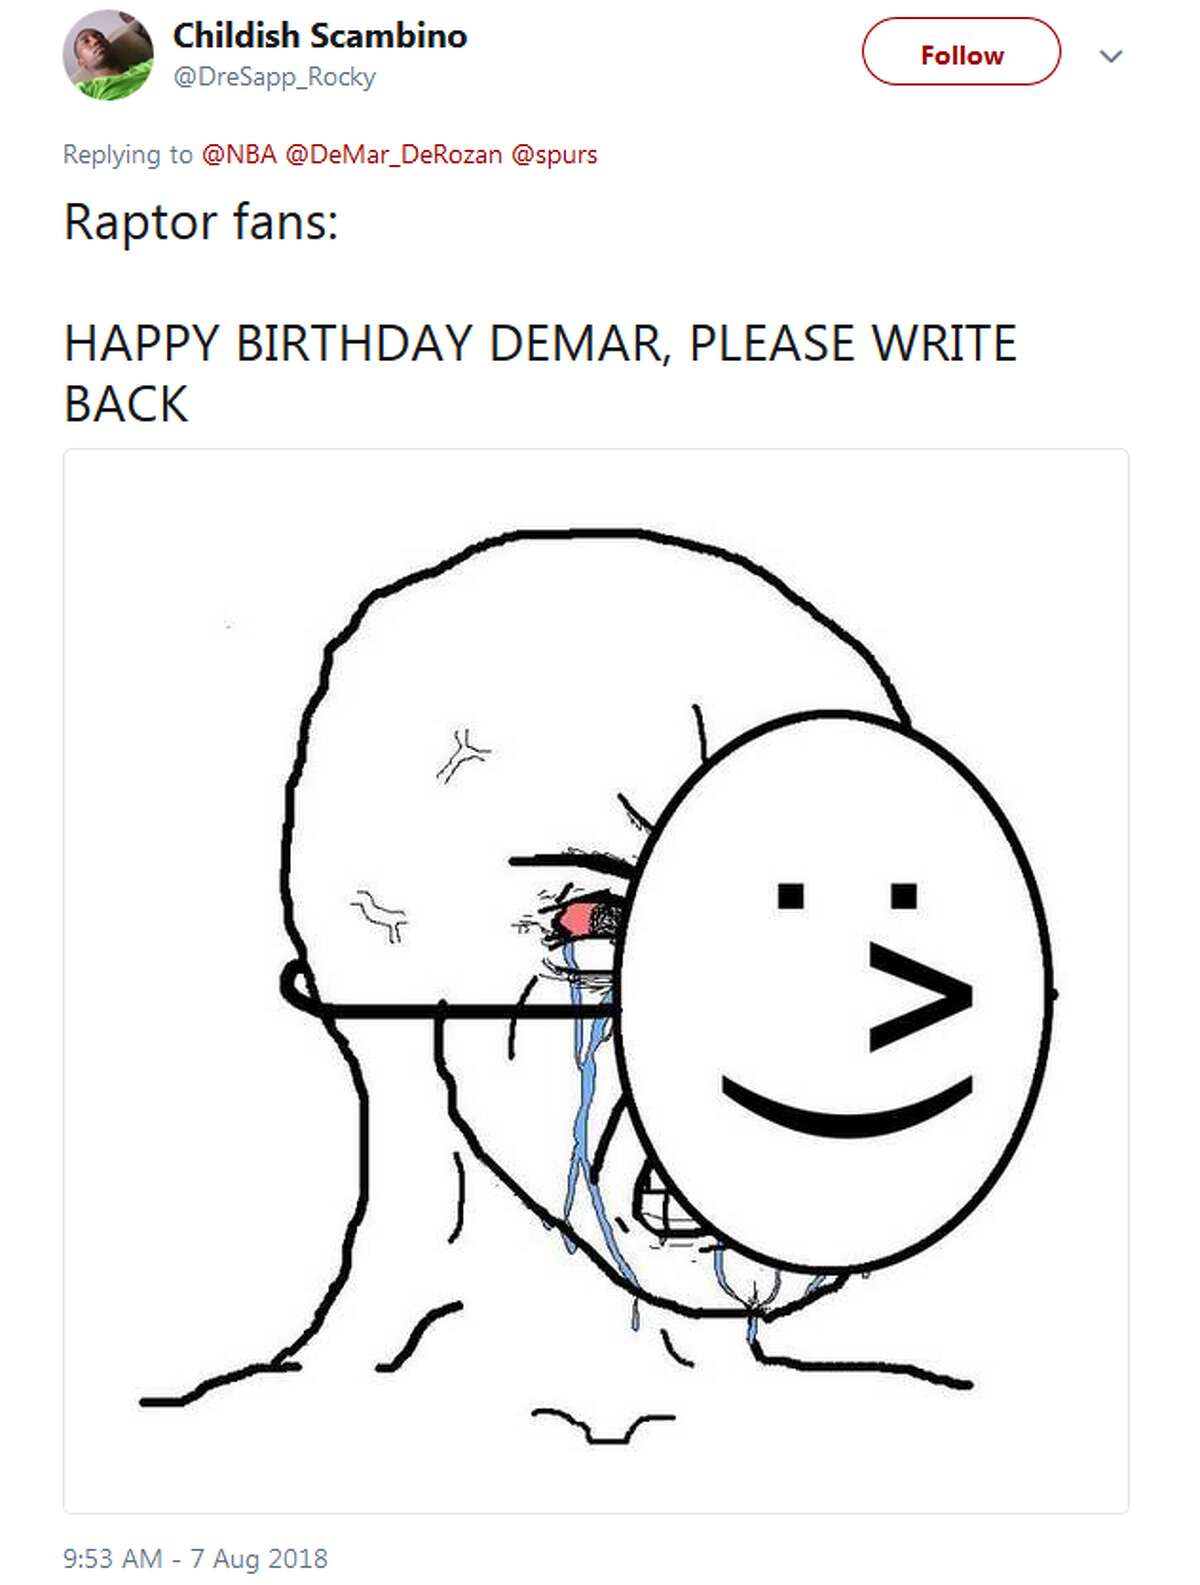 @DreSapp_Rocky: Raptor fans: HAPPY BIRTHDAY DEMAR, PLEASE WRITE BACK